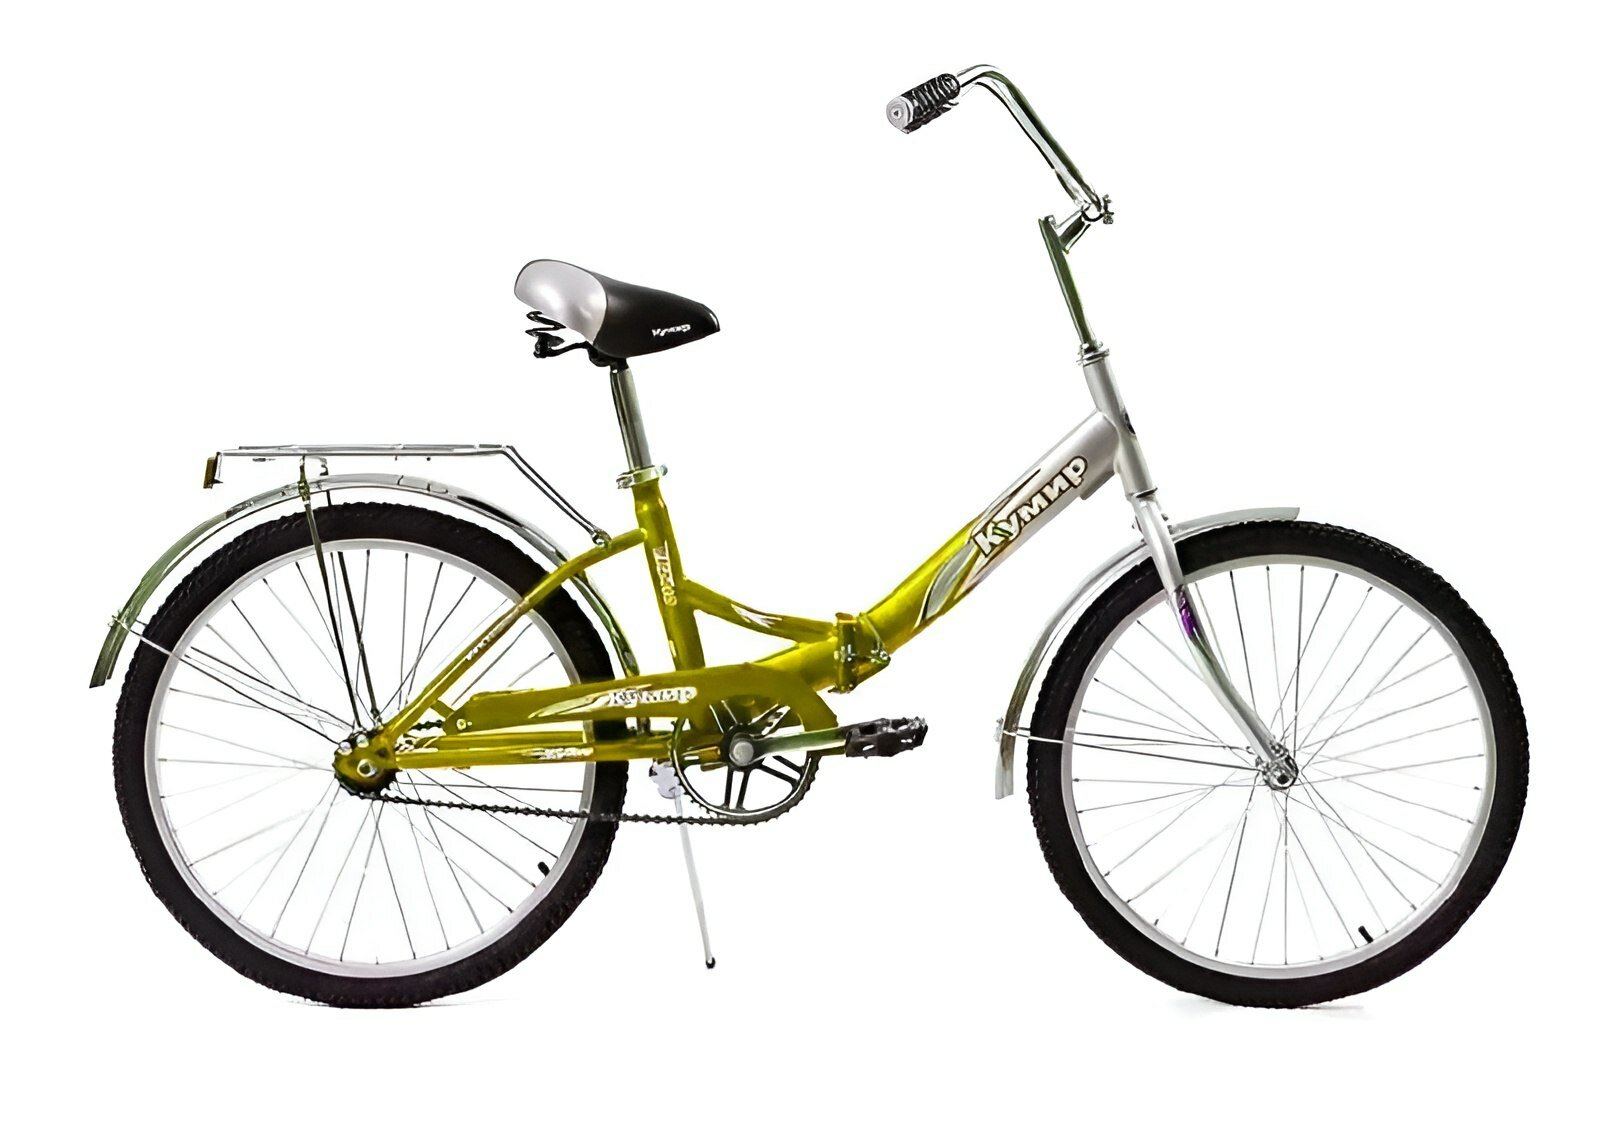 Велосипед "Кумир 2410" складной городской, 24 дюйма, желтый